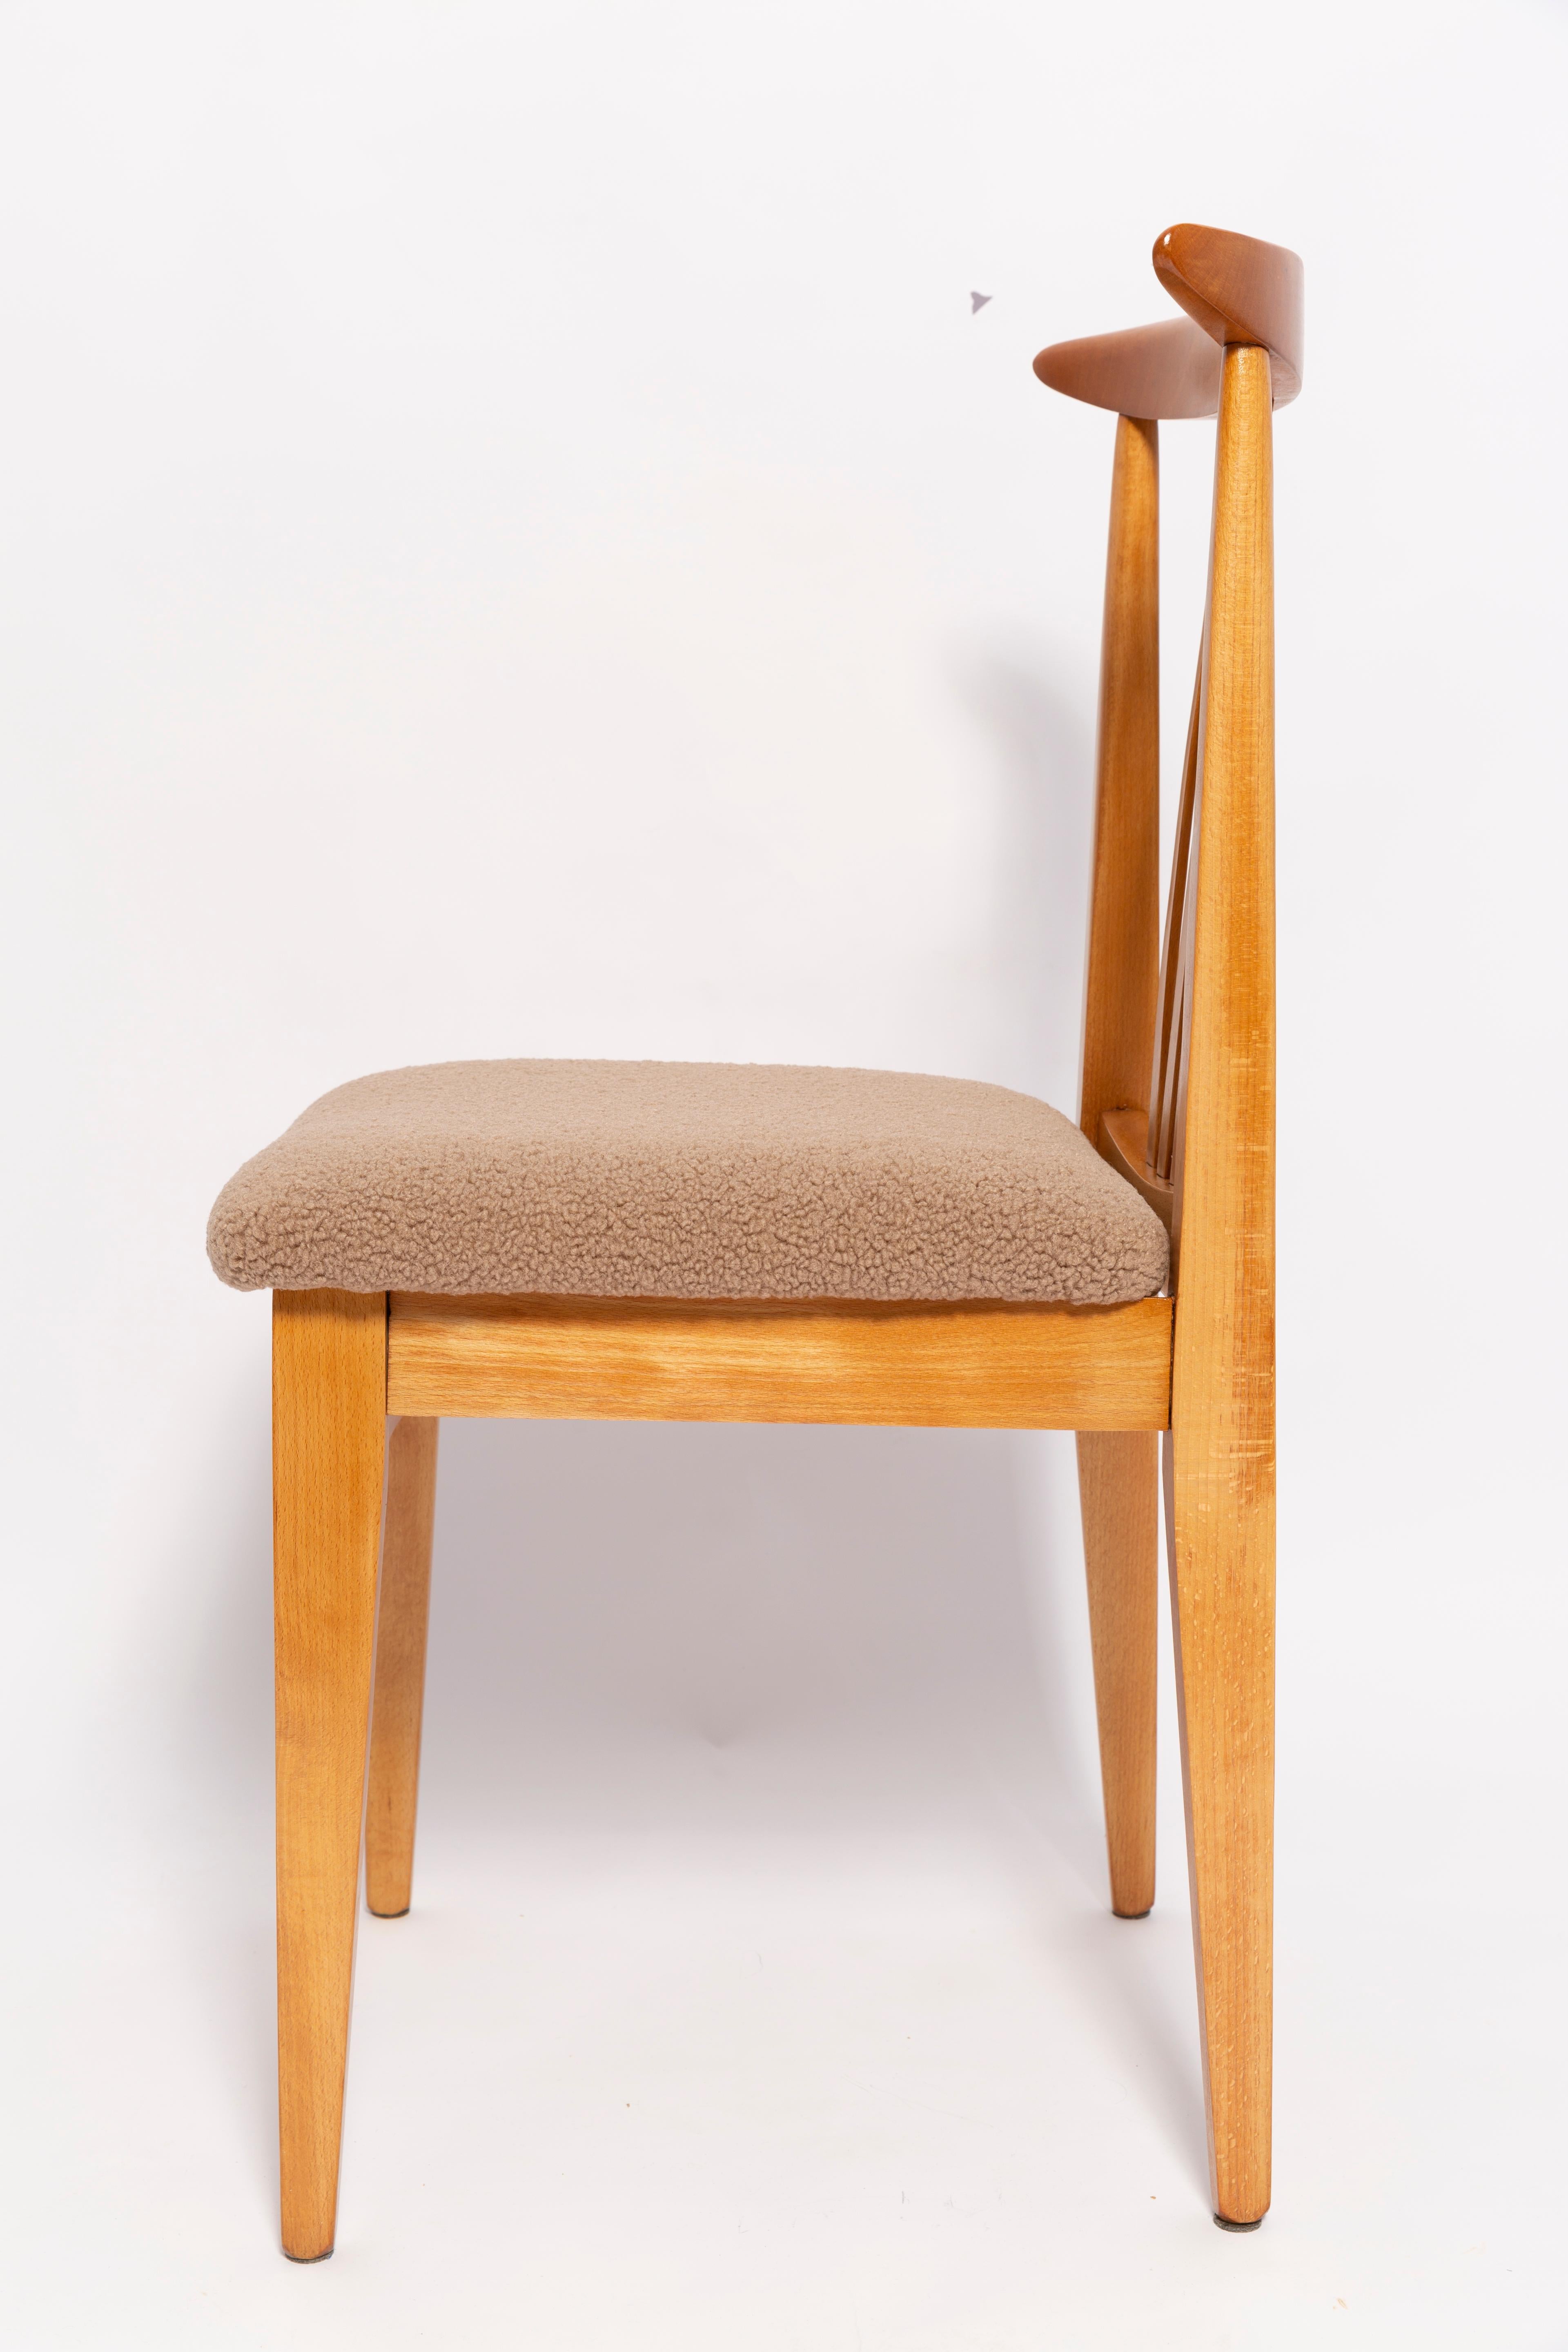 Une belle chaise en hêtre conçue par M. Zielinski, type 200 / 100B. Fabriqué par le centre industriel du meuble d'Opole à la fin des années 1960 en Pologne. La chaise a subi une rénovation complète de la menuiserie et de la tapisserie. Sièges